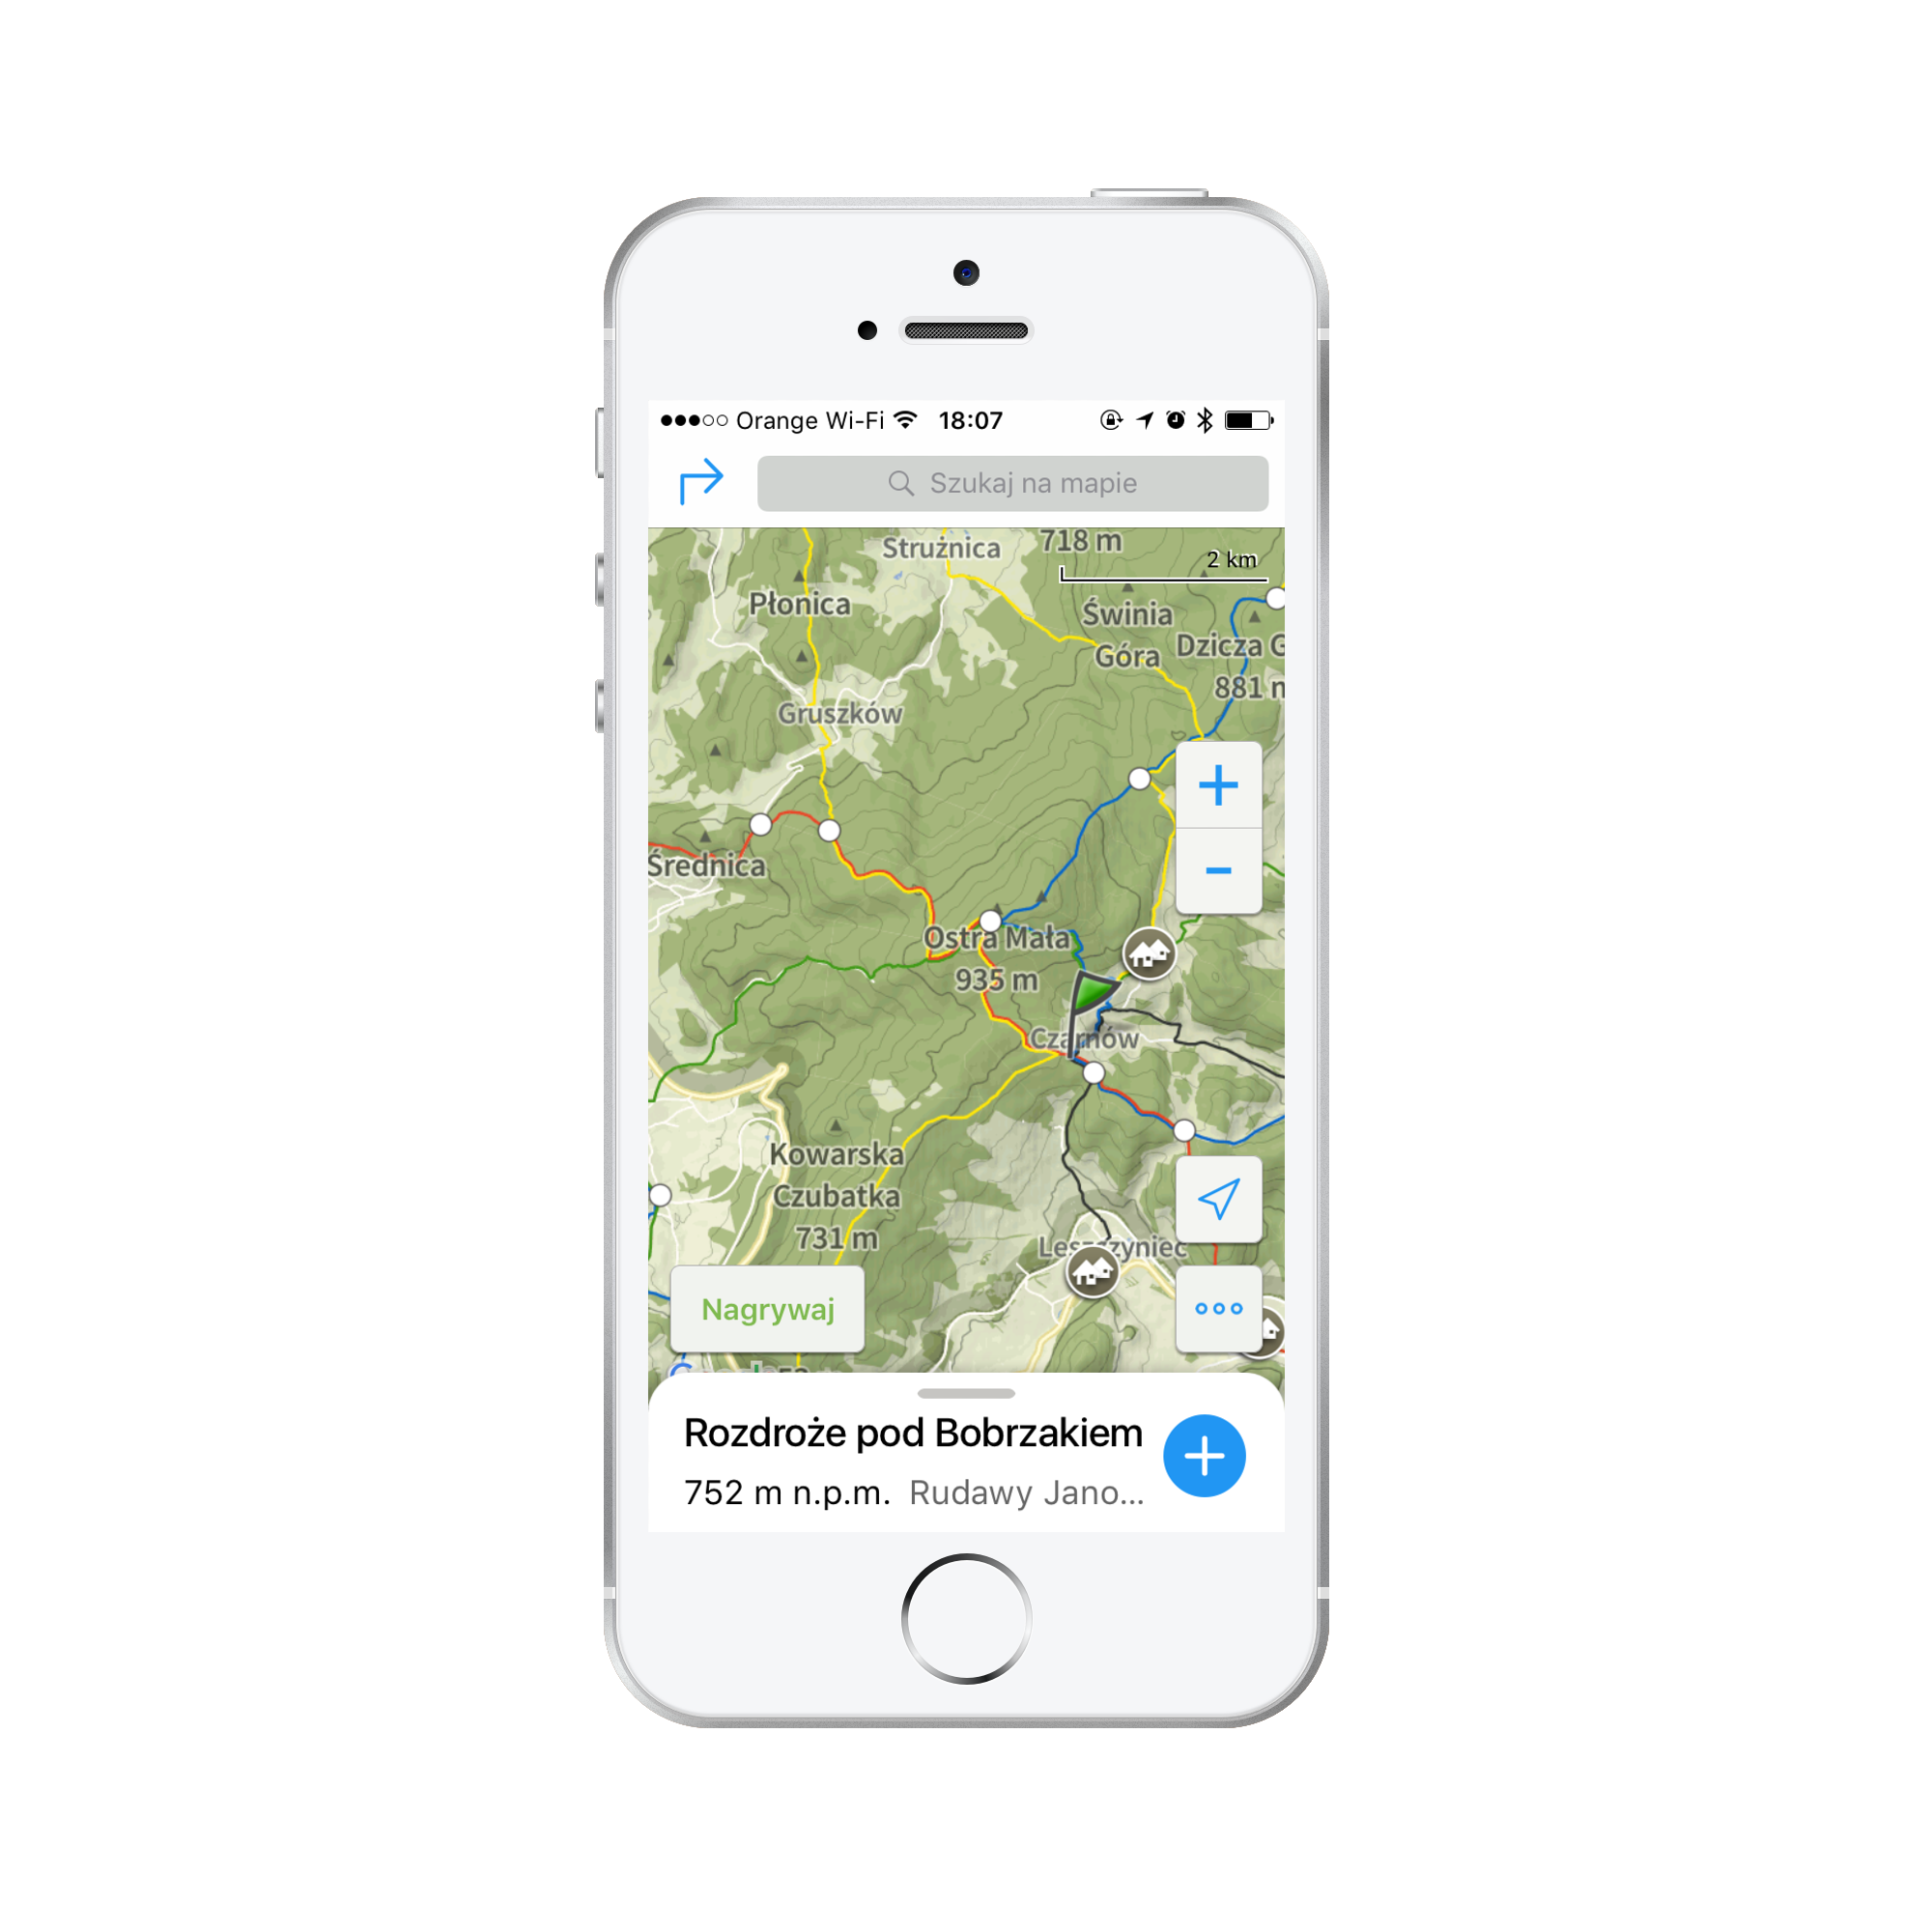 В версии Premium (для iOS, единственной доступной, как известно) в мобильных приложениях мы можем загружать в память устройства гораздо более полезные и более полезные основы из туристических карт